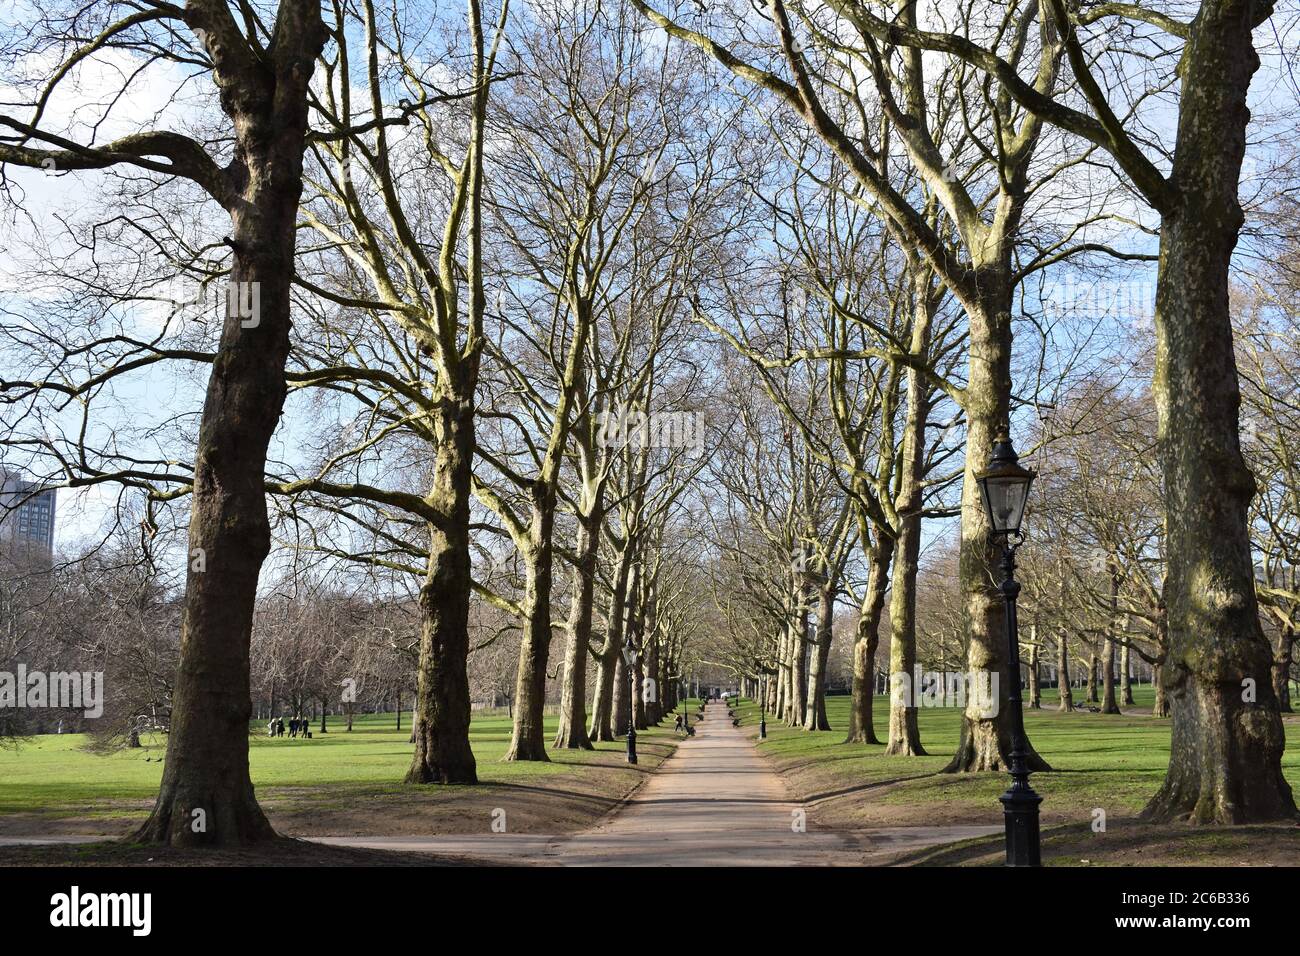 Un percorso alberato durante l'inverno. Una vecchia lampada da strada e alberi senza frondoli costeggiano il passaggio pedonale di Green Park, London Royal Parks di Londra. Foto Stock